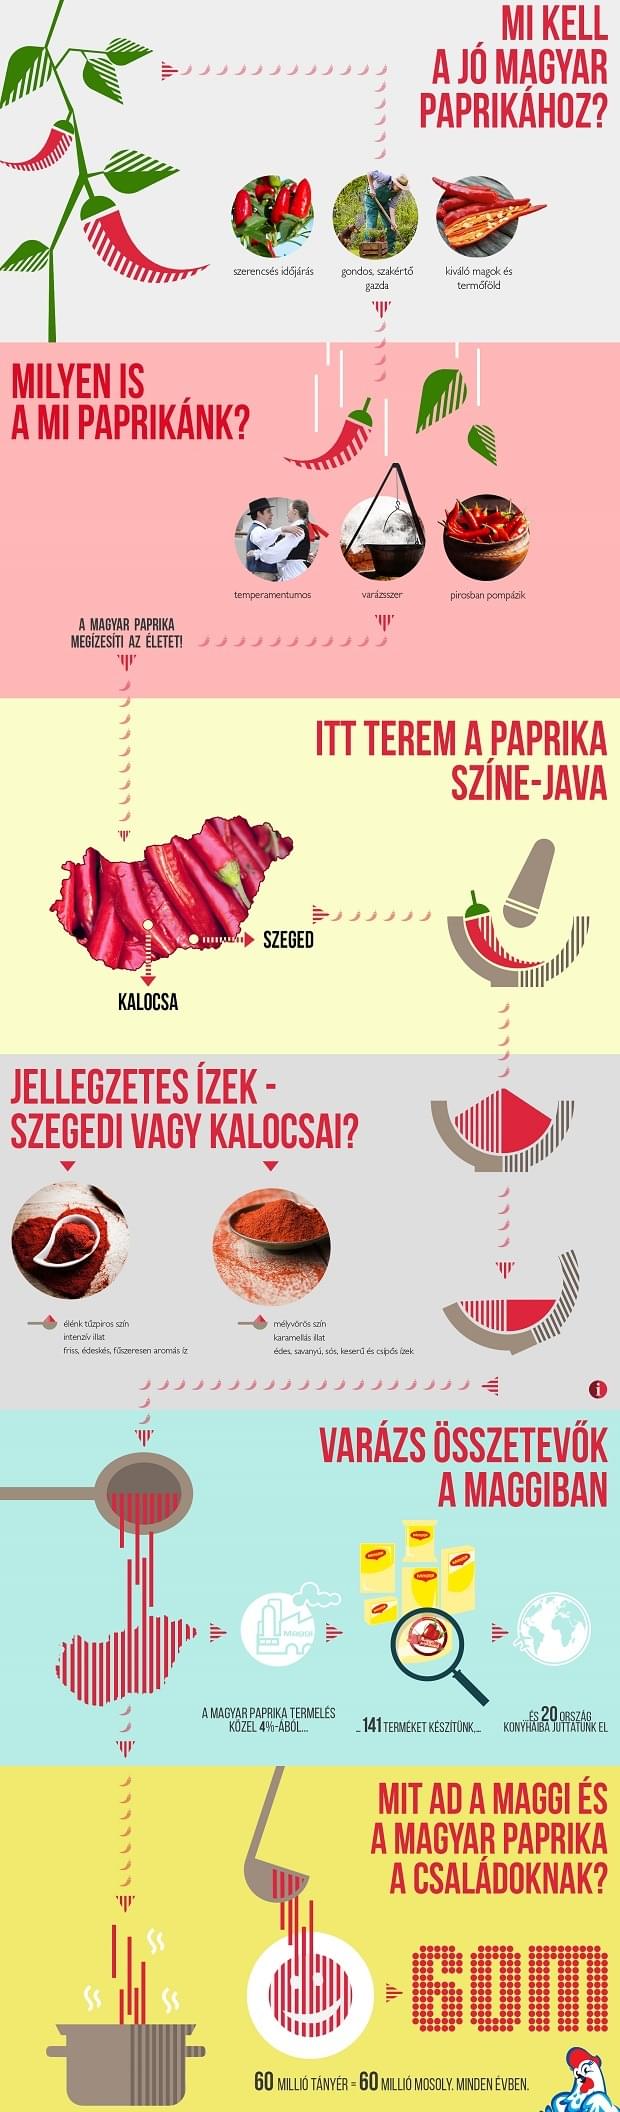 Magyar_paprika_Maggi_infografika_201607